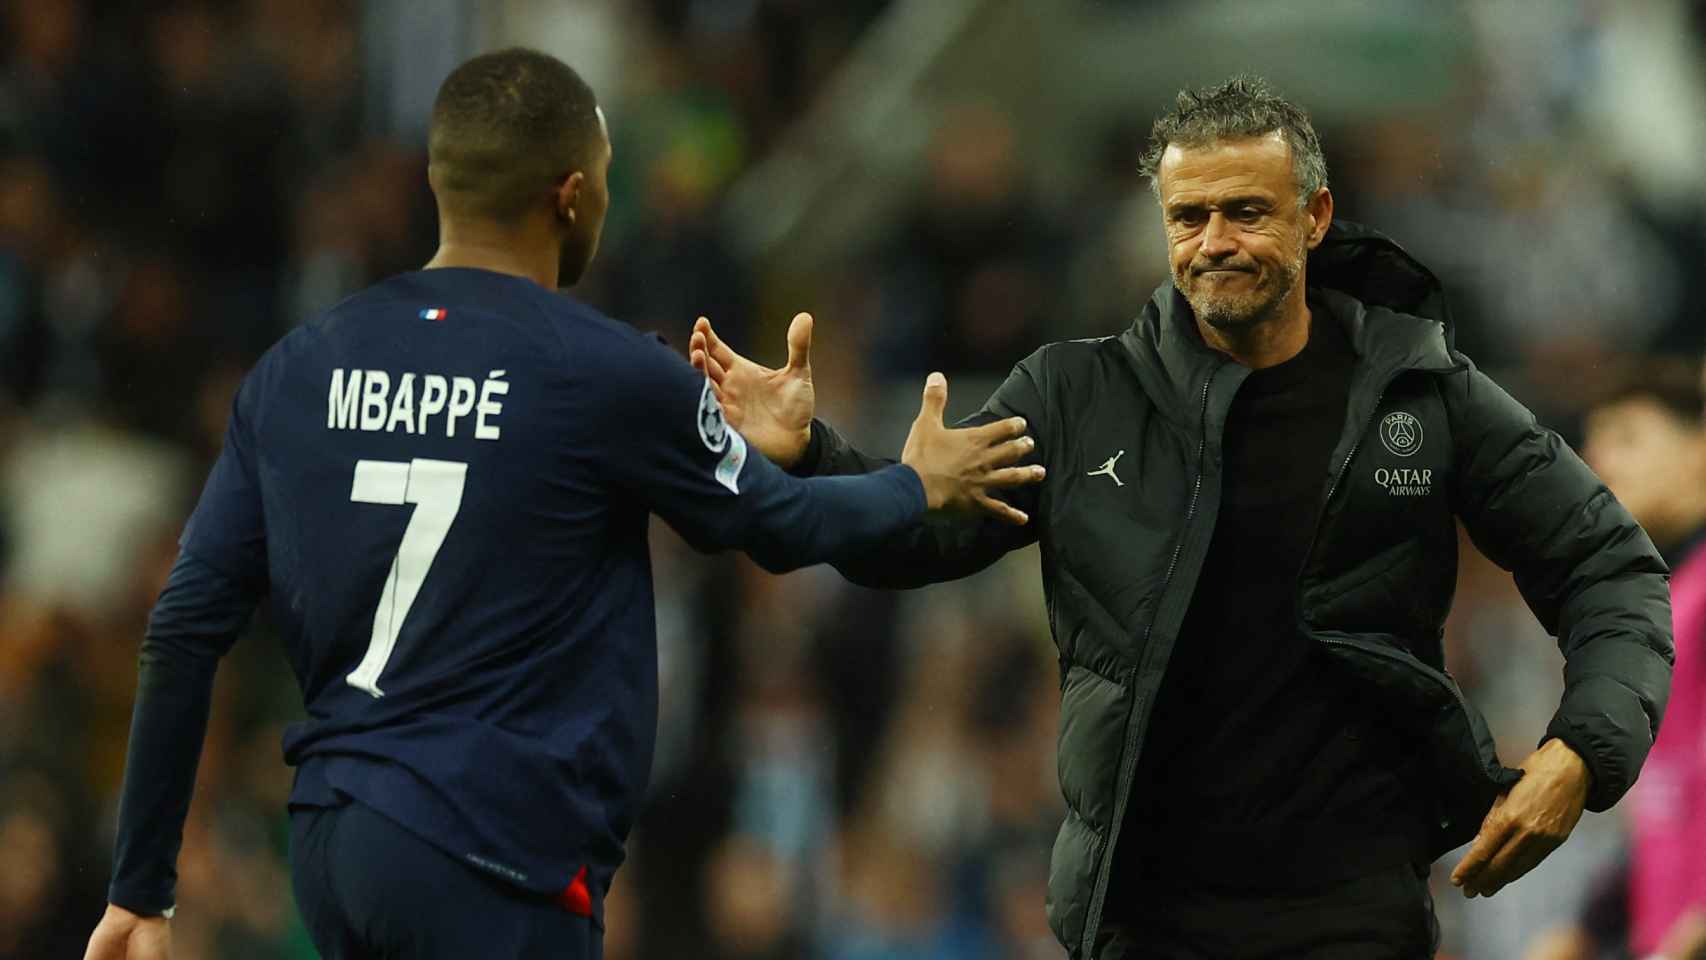 Mbappé y Luis Enrique se dan la mano durante un partido con el PSG